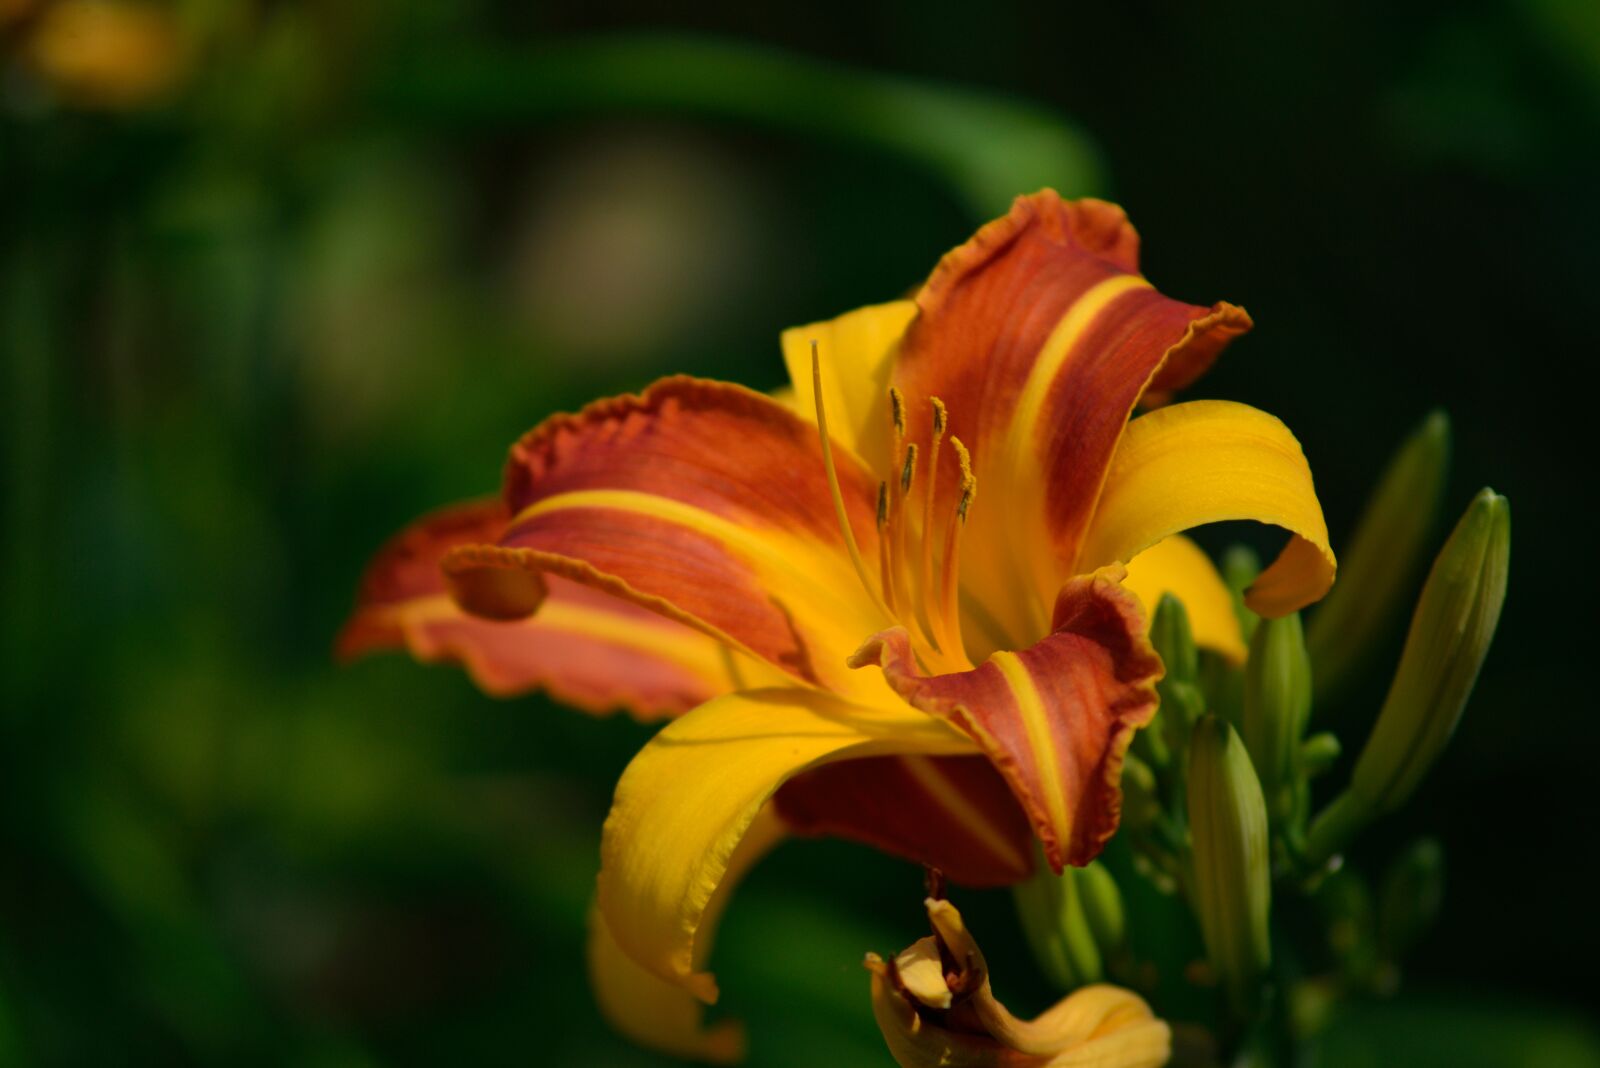 AF Zoom-Nikkor 75-300mm f/4.5-5.6 sample photo. Blume, bunga, fleur, flor photography